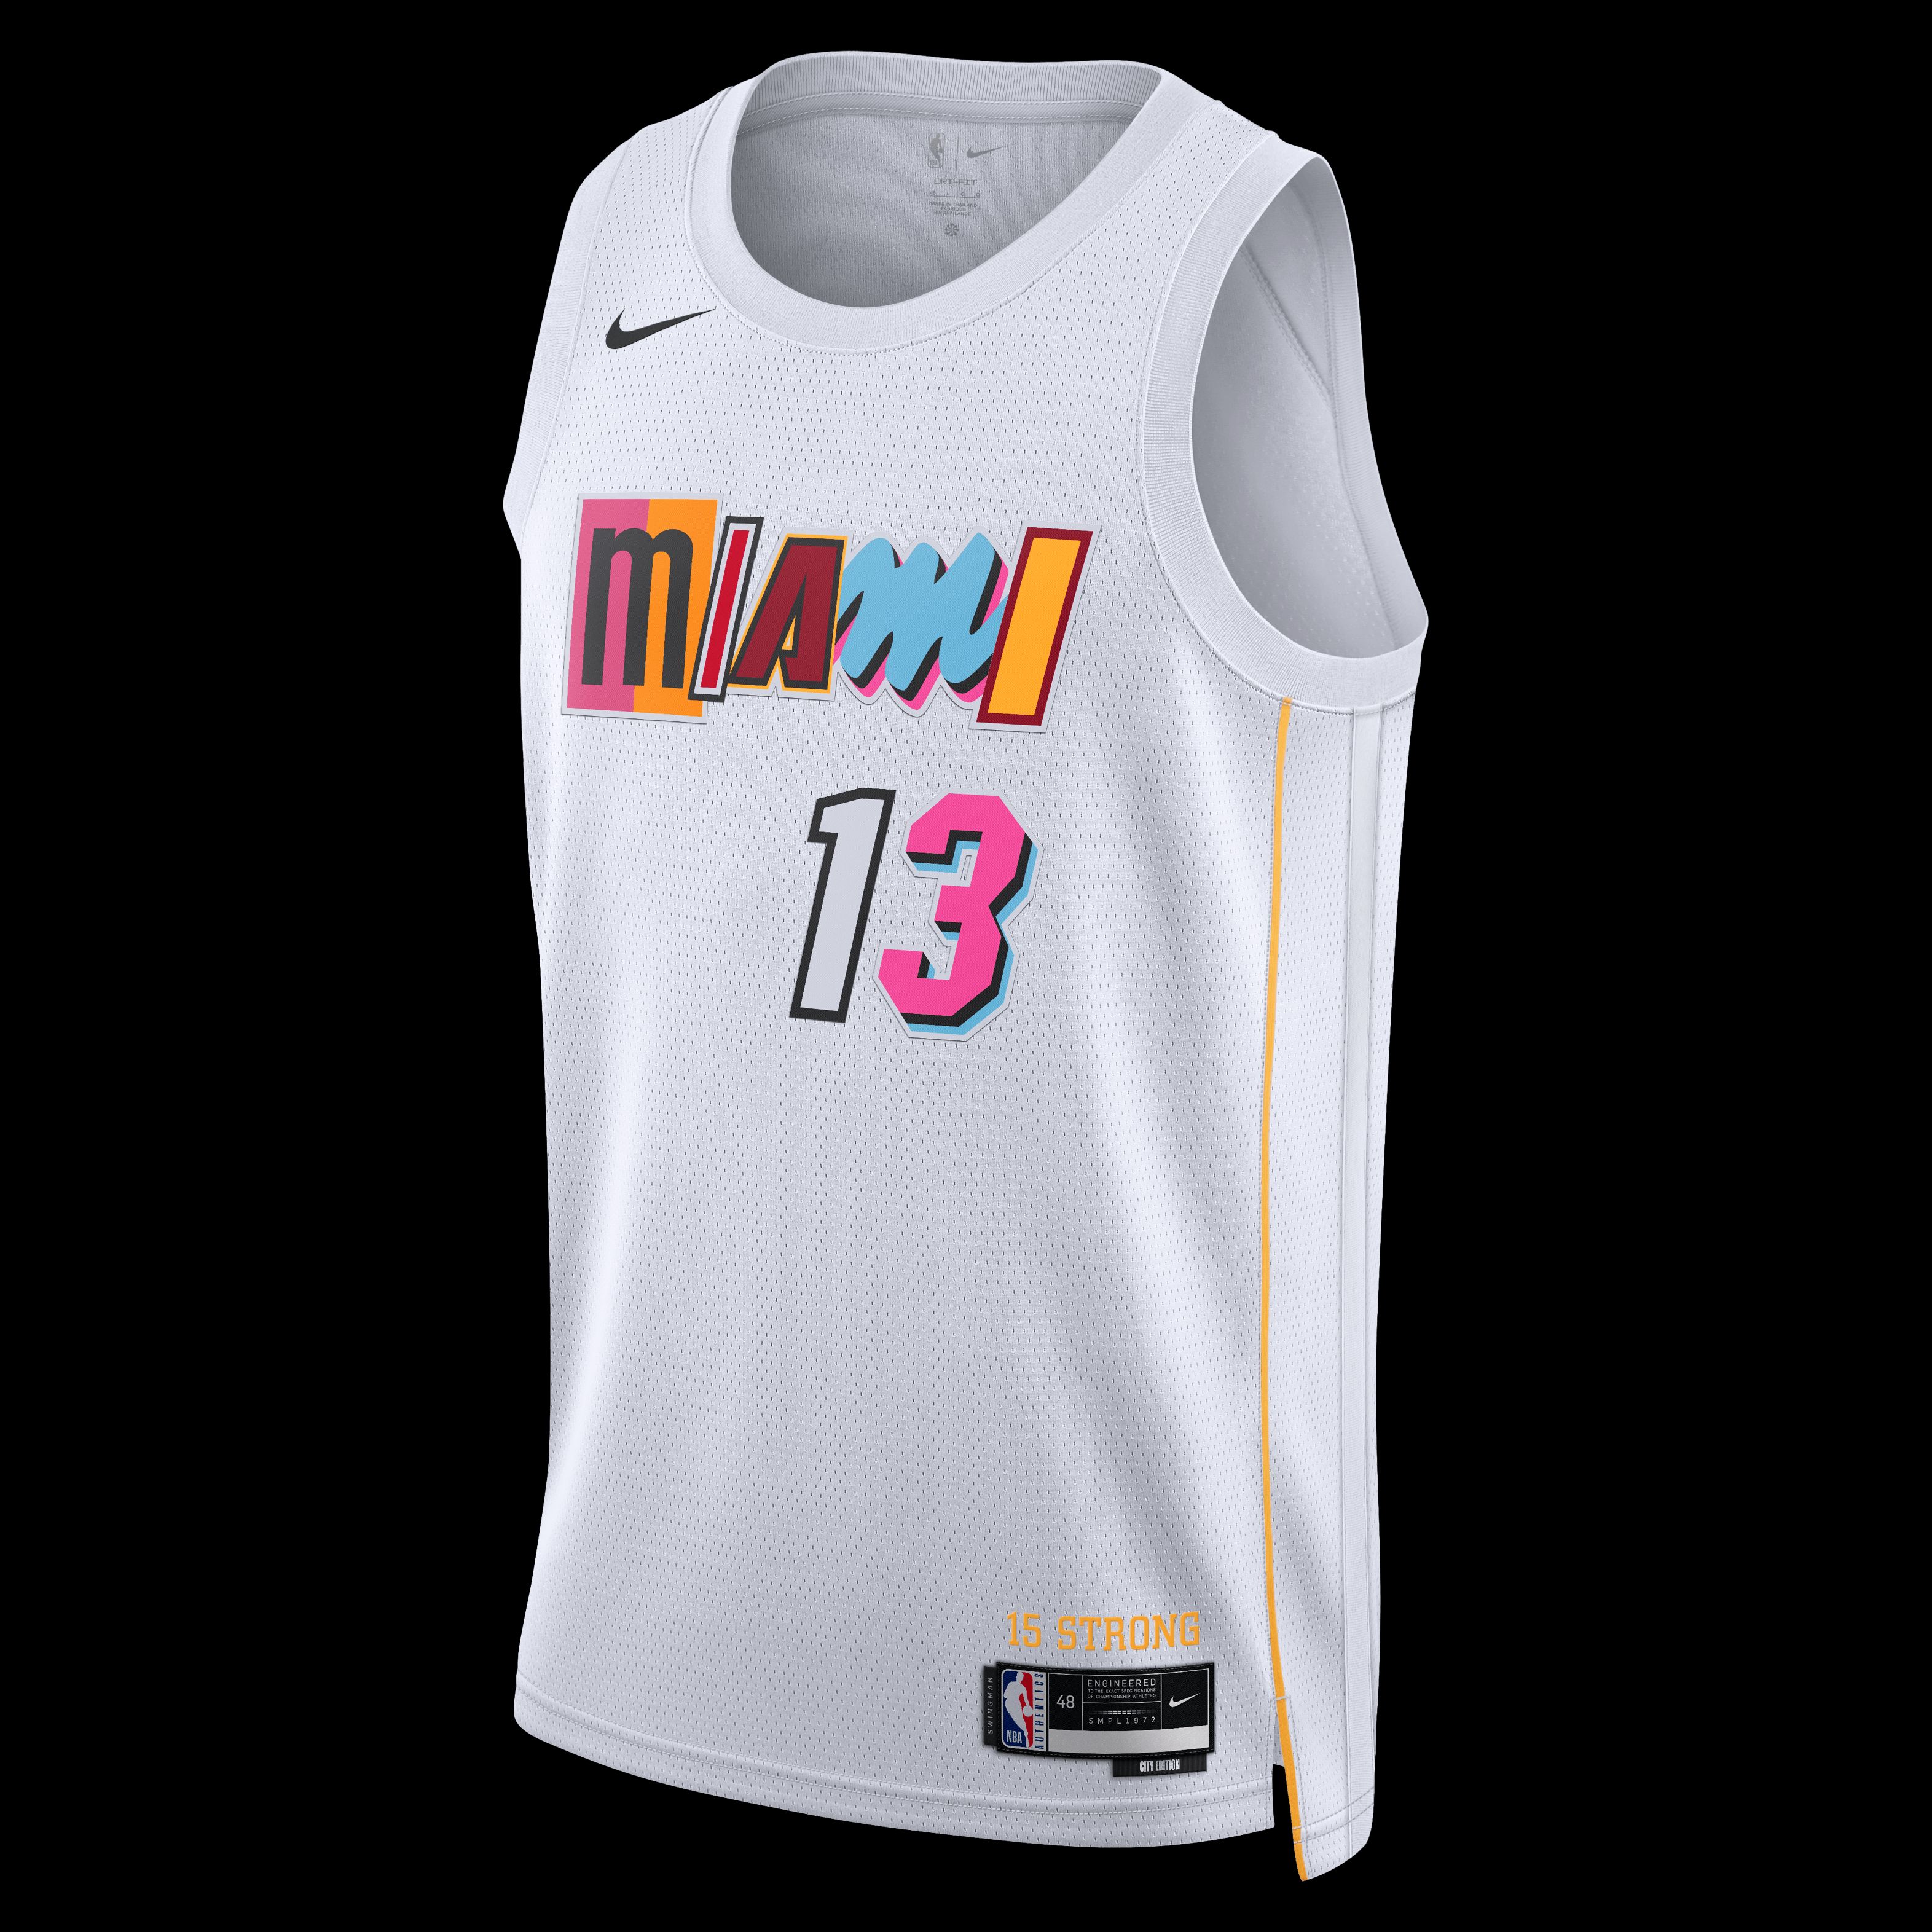 Miami Heat Jersey, Heat Basketball Jerseys, Nike Fanatics NBA